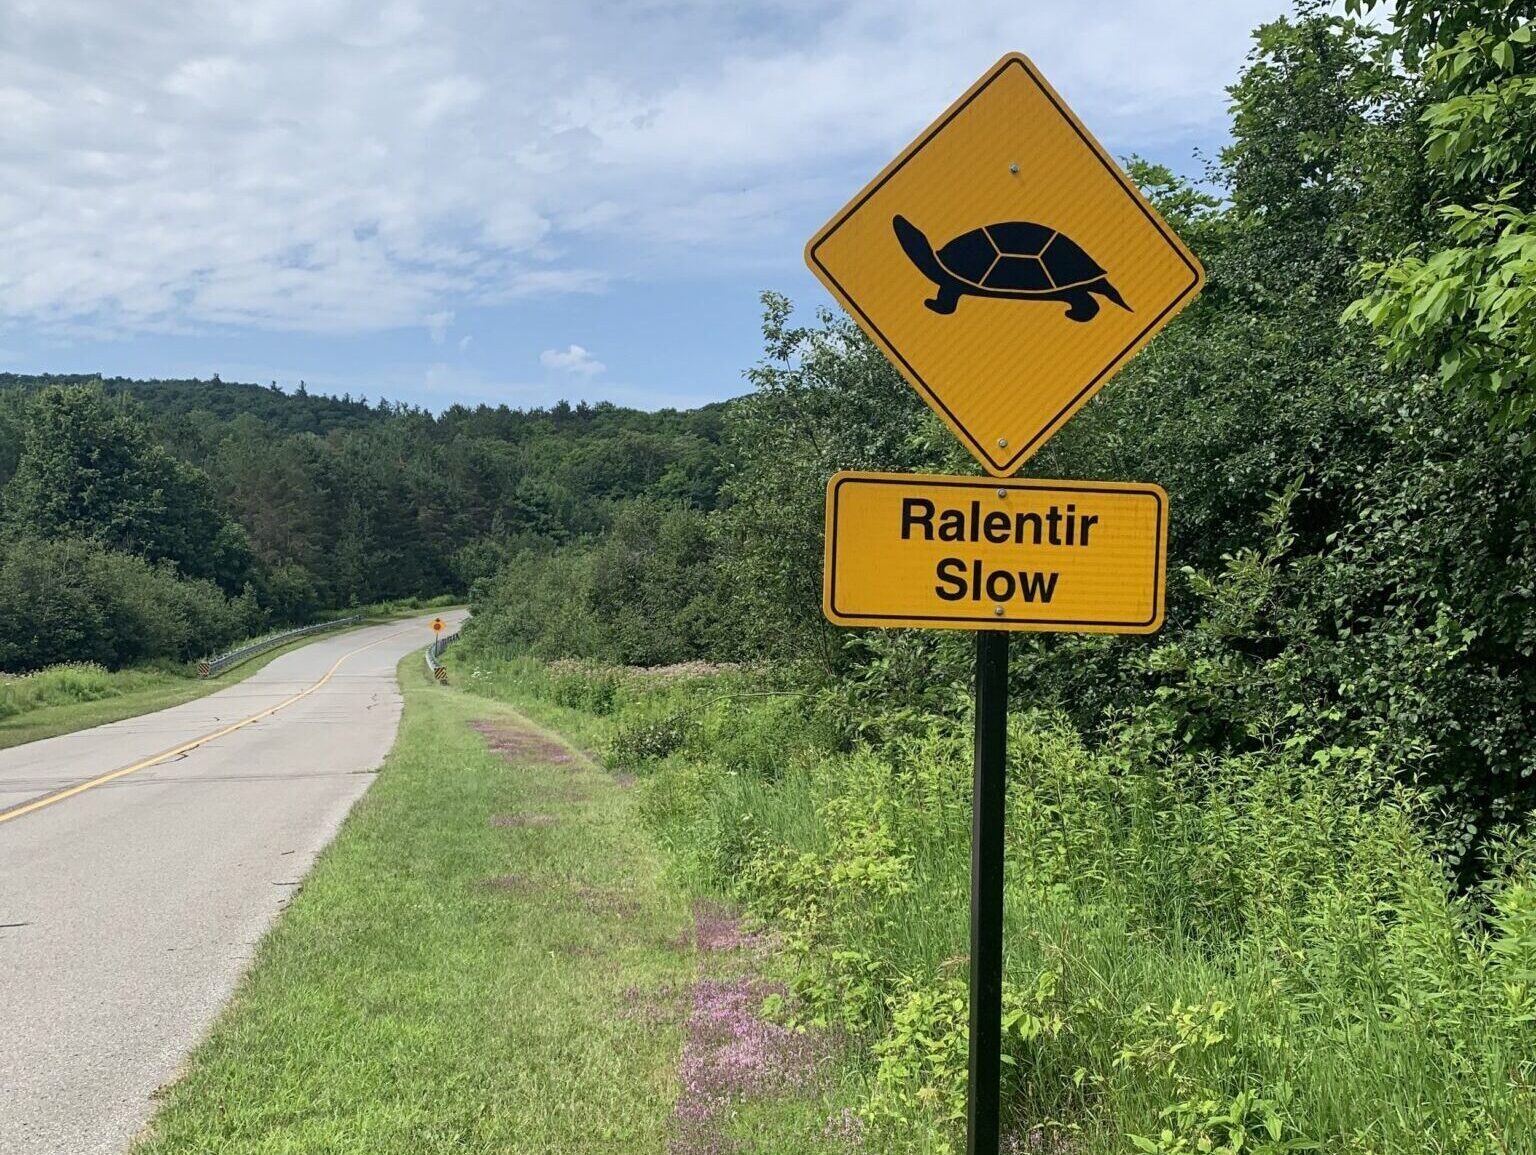 Panneau de ralentissement avec un pictogramme de tortue, sur une route déserte du parc de la Gatineau.